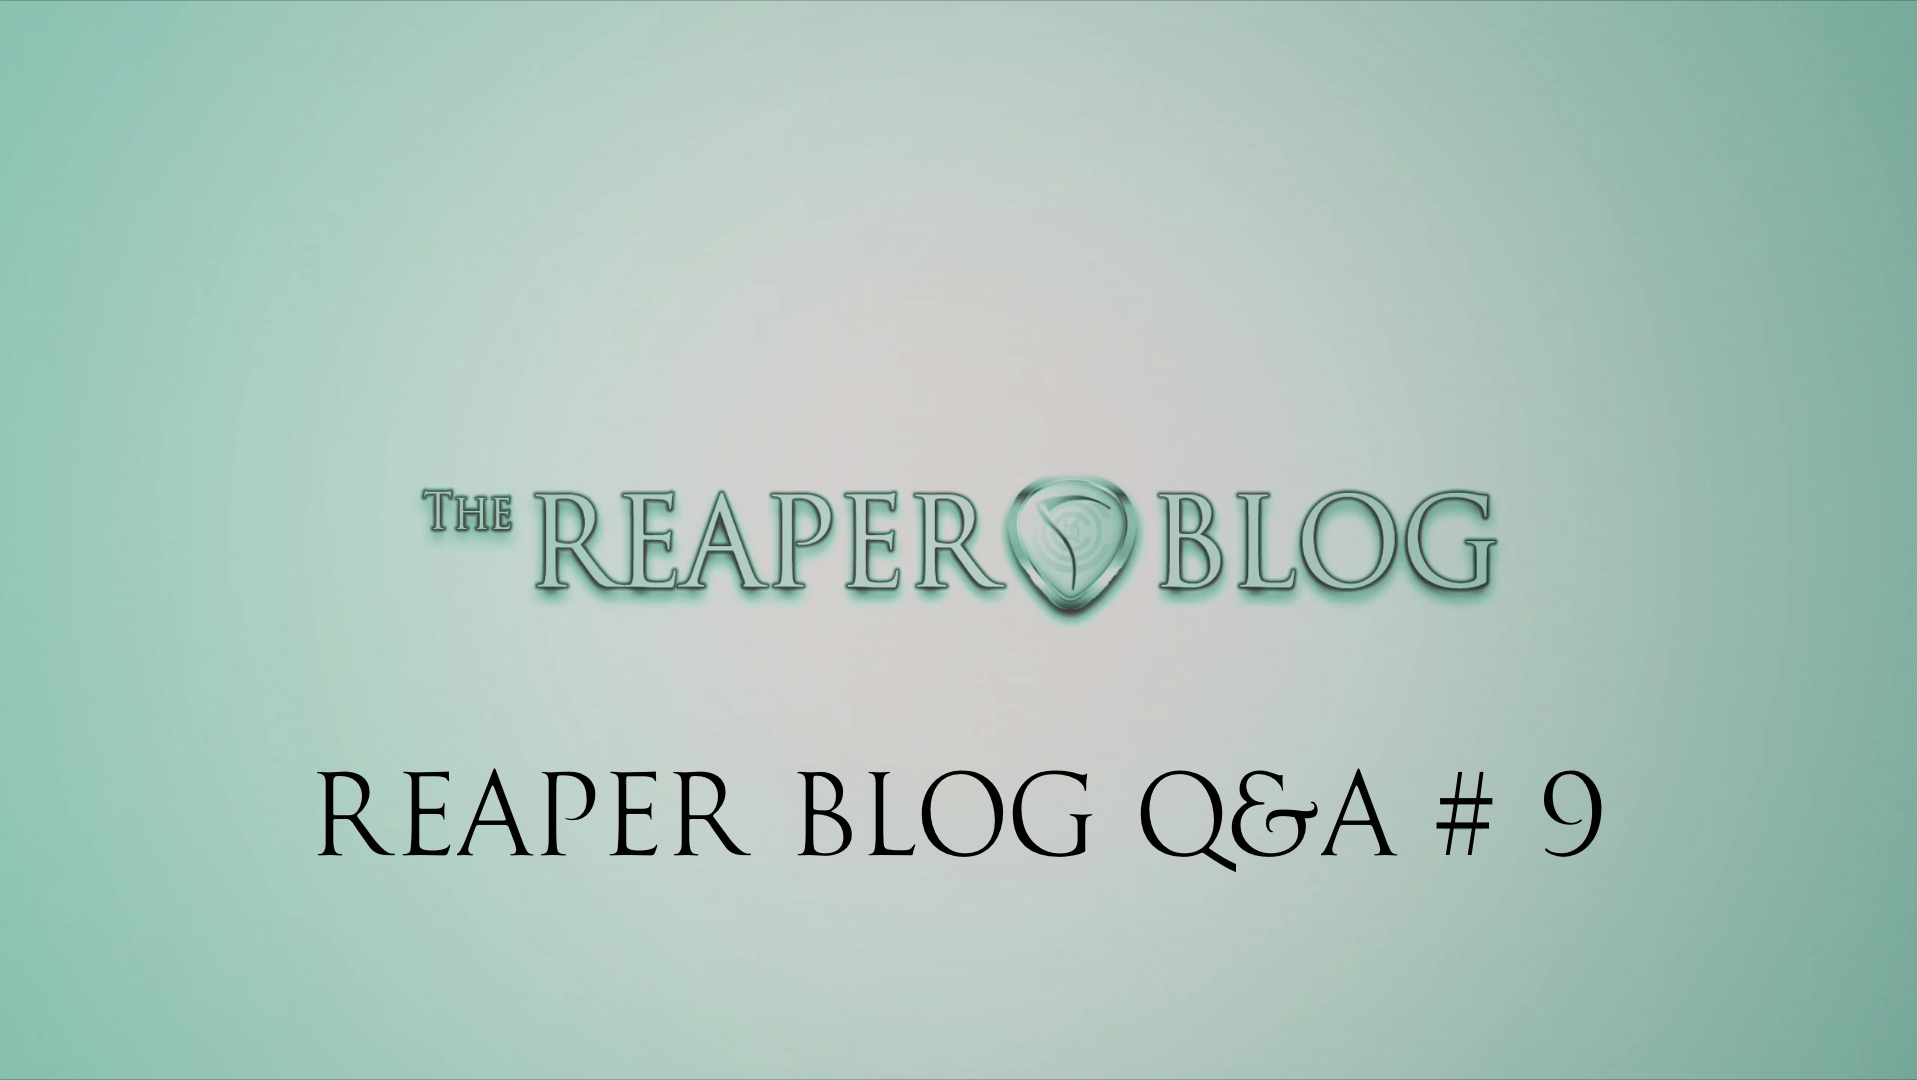 REAPER Blog Q&A # 9